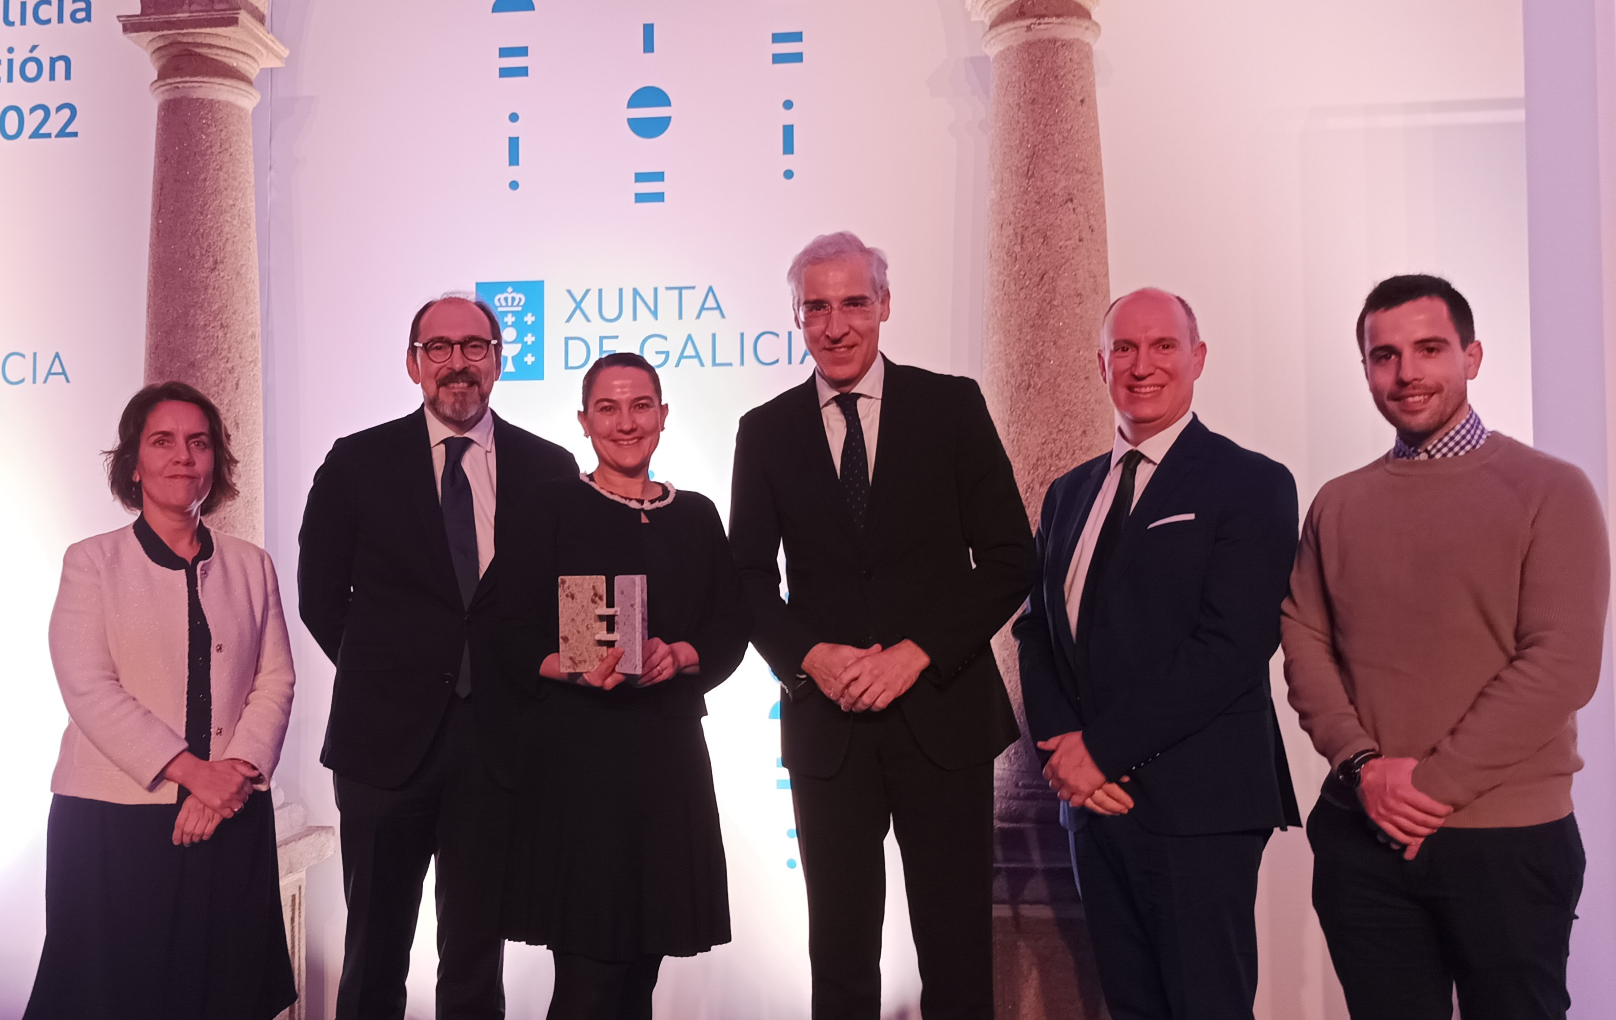 UNVI agraciada en los III Premios de Innovación y Diseño de Galicia 2022